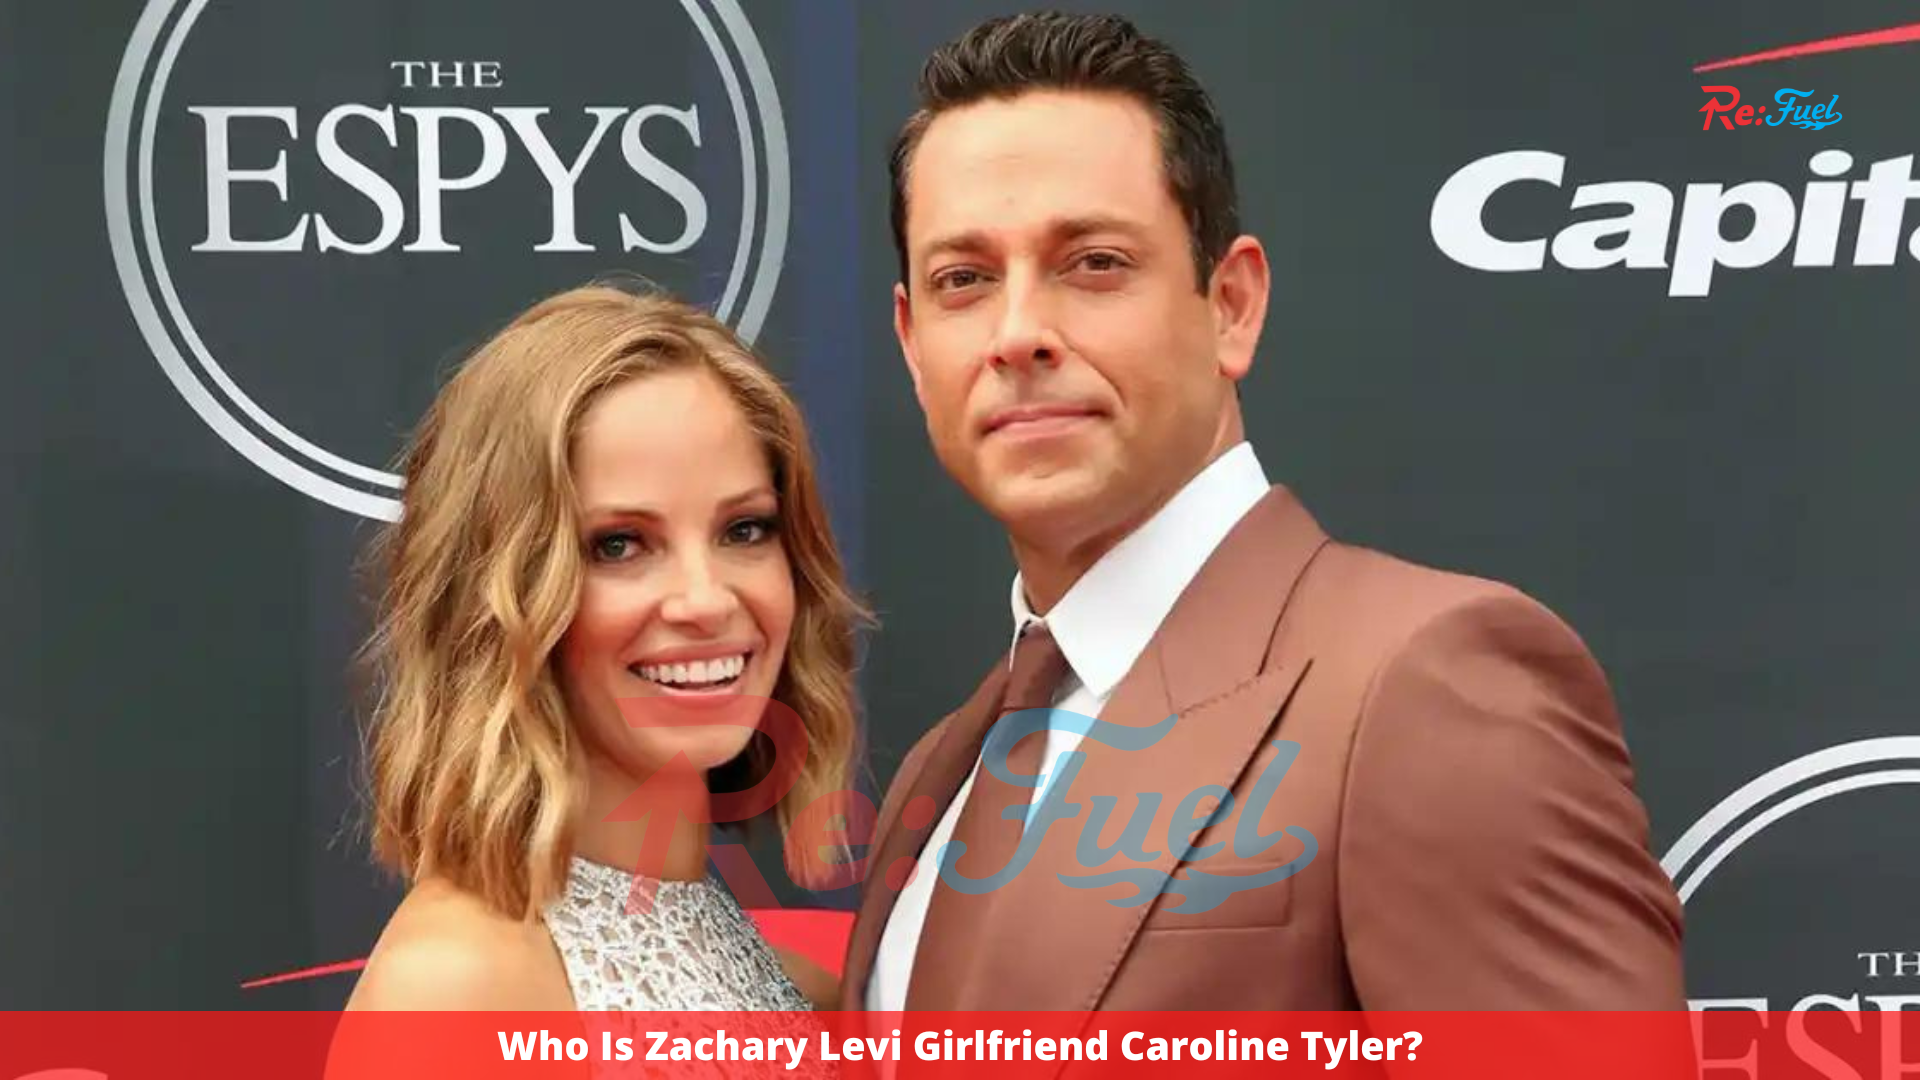 Who Is Zachary Levi Girlfriend Caroline Tyler?